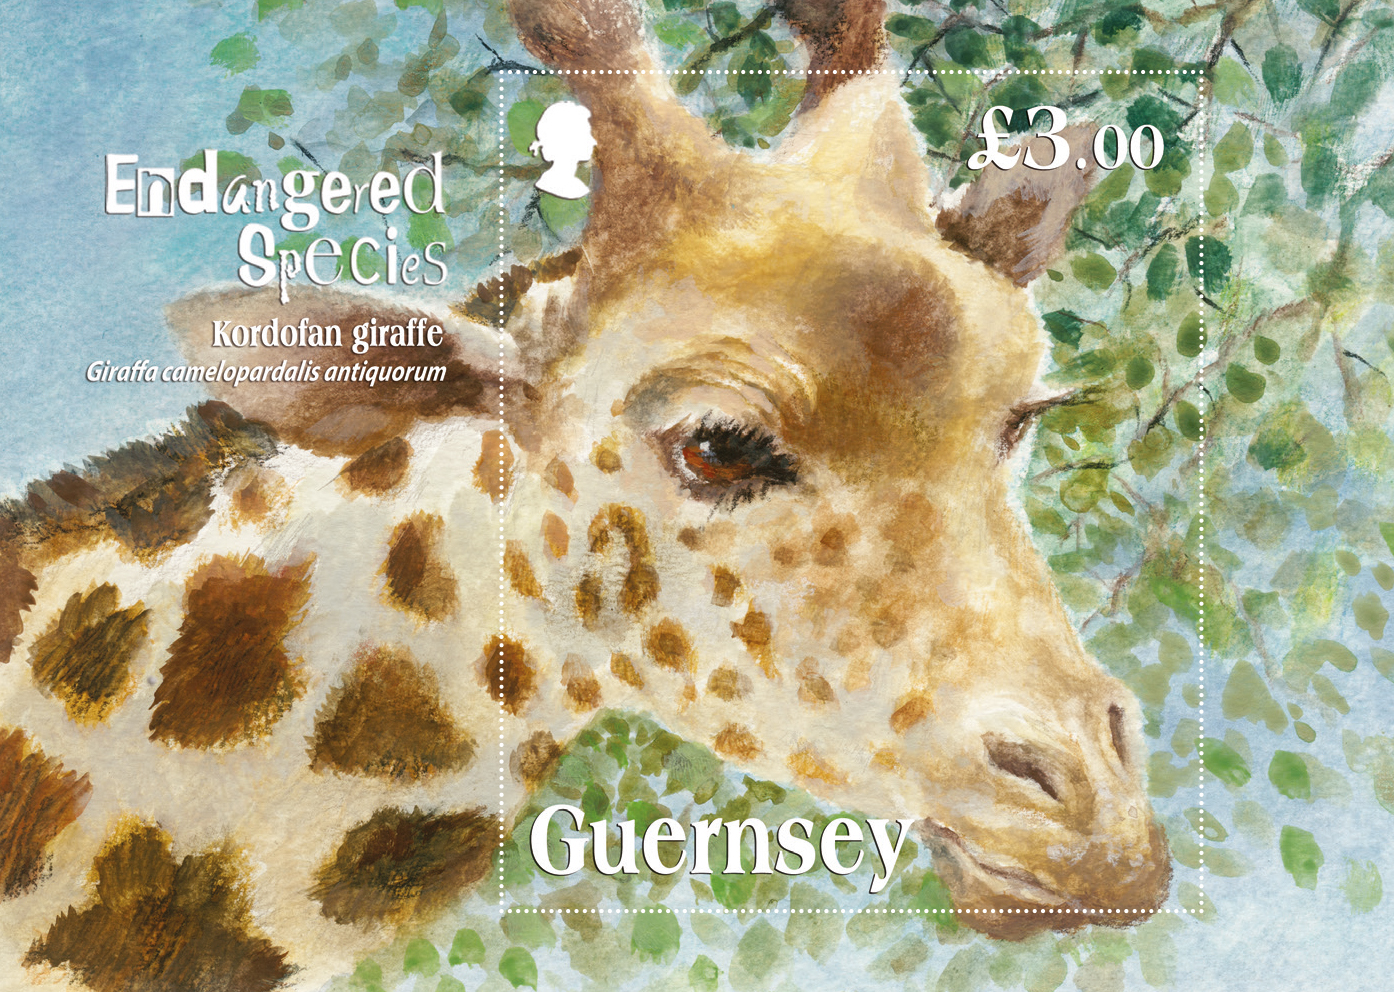 Miniature sheet depicts critically endangered Kordofan Giraffe